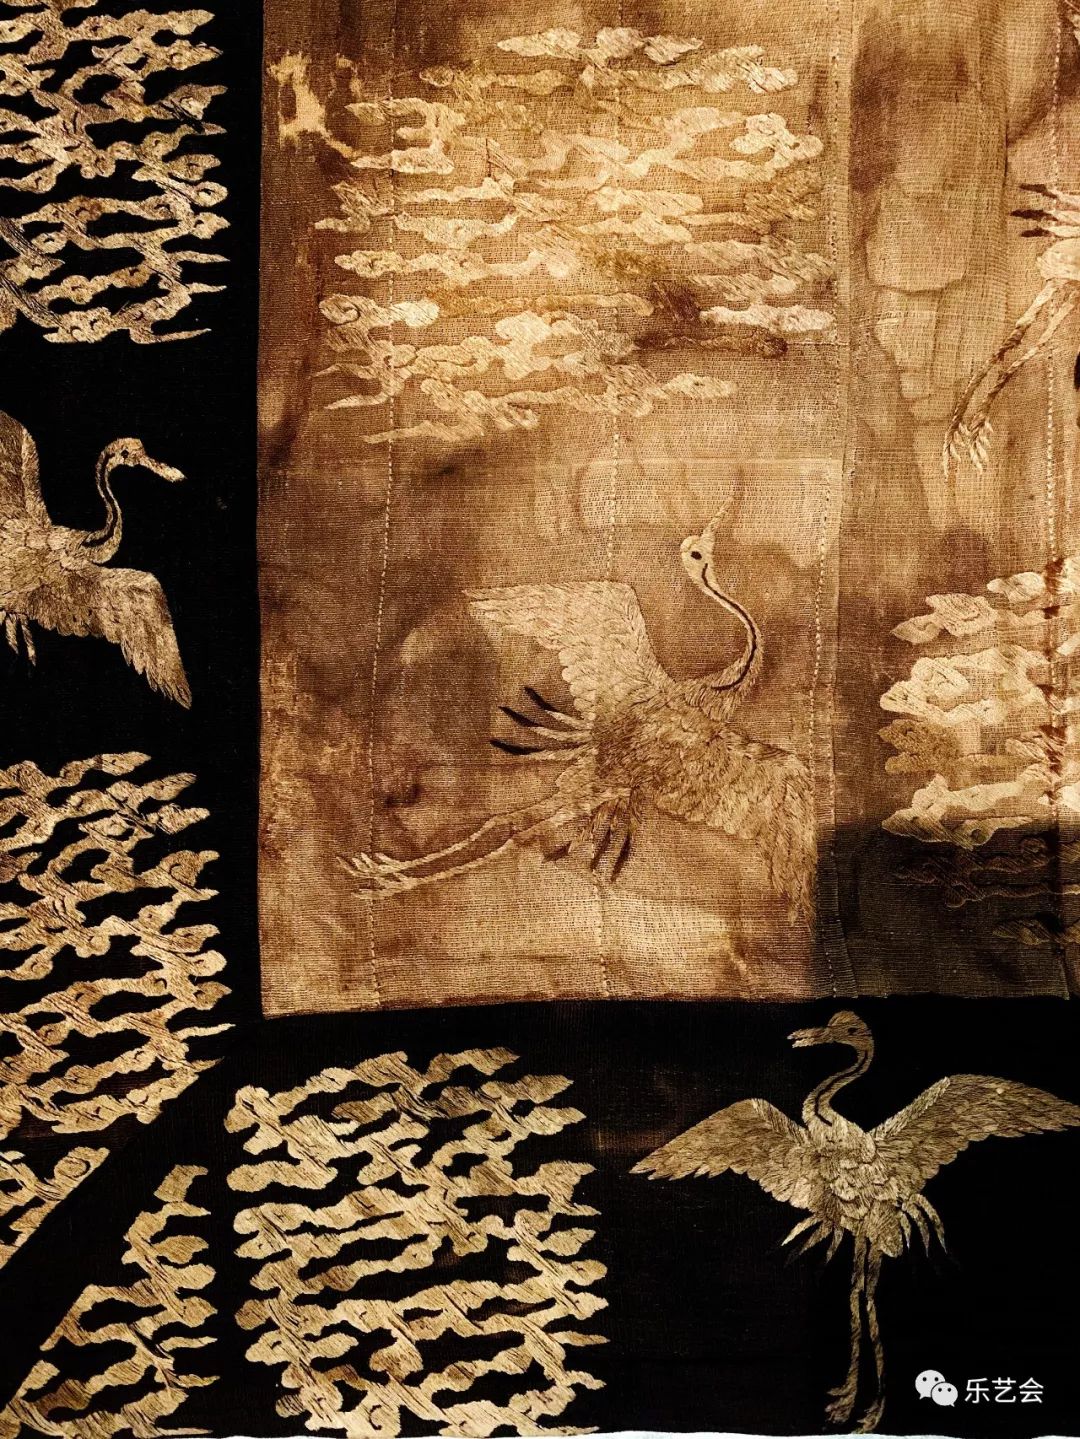 首博锦绣中华古代丝织品文化展之三无极斋分享